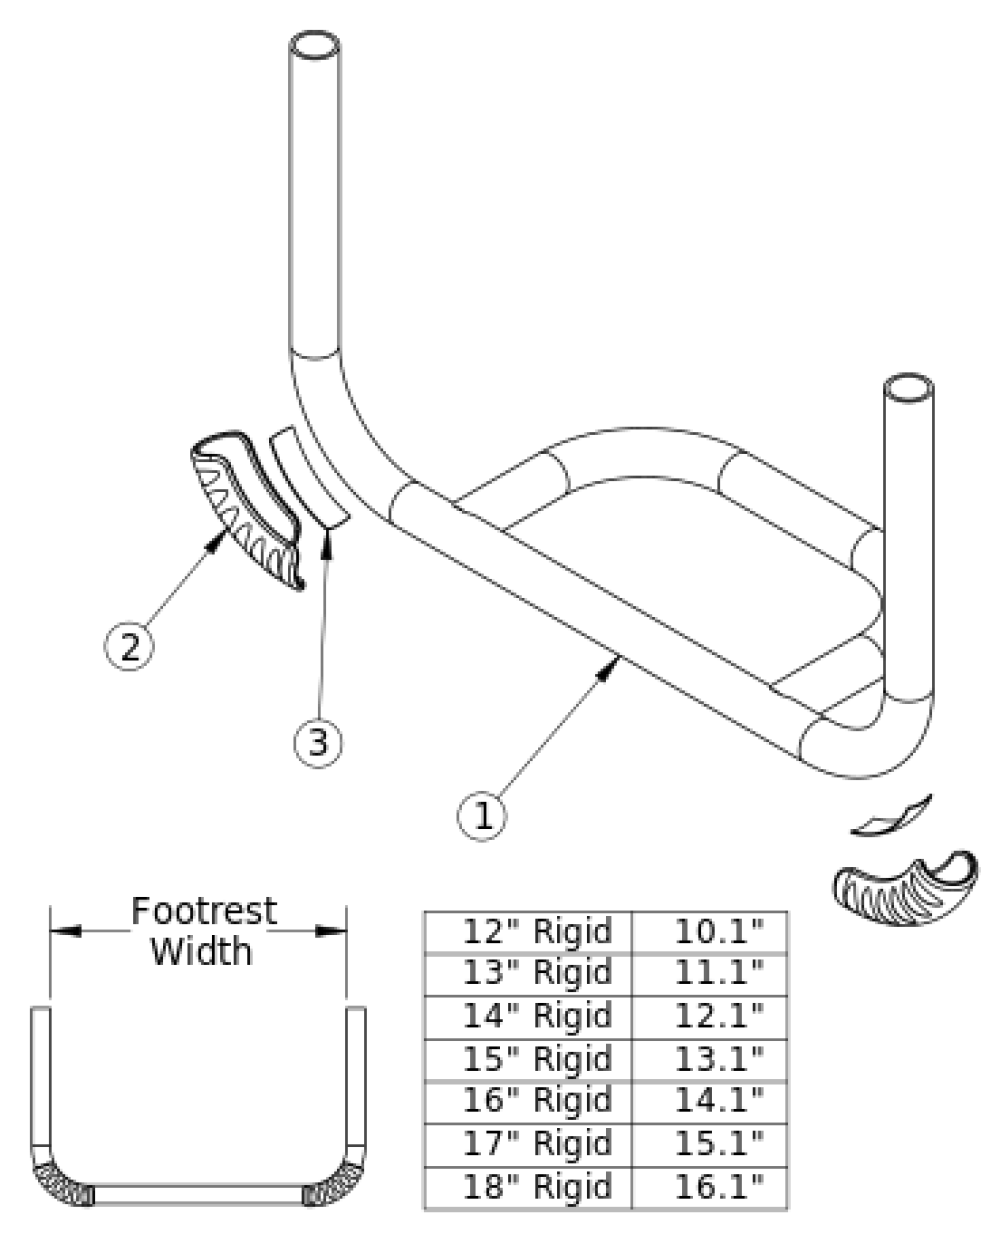 Rogue Xp Tubular Open Footrest parts diagram